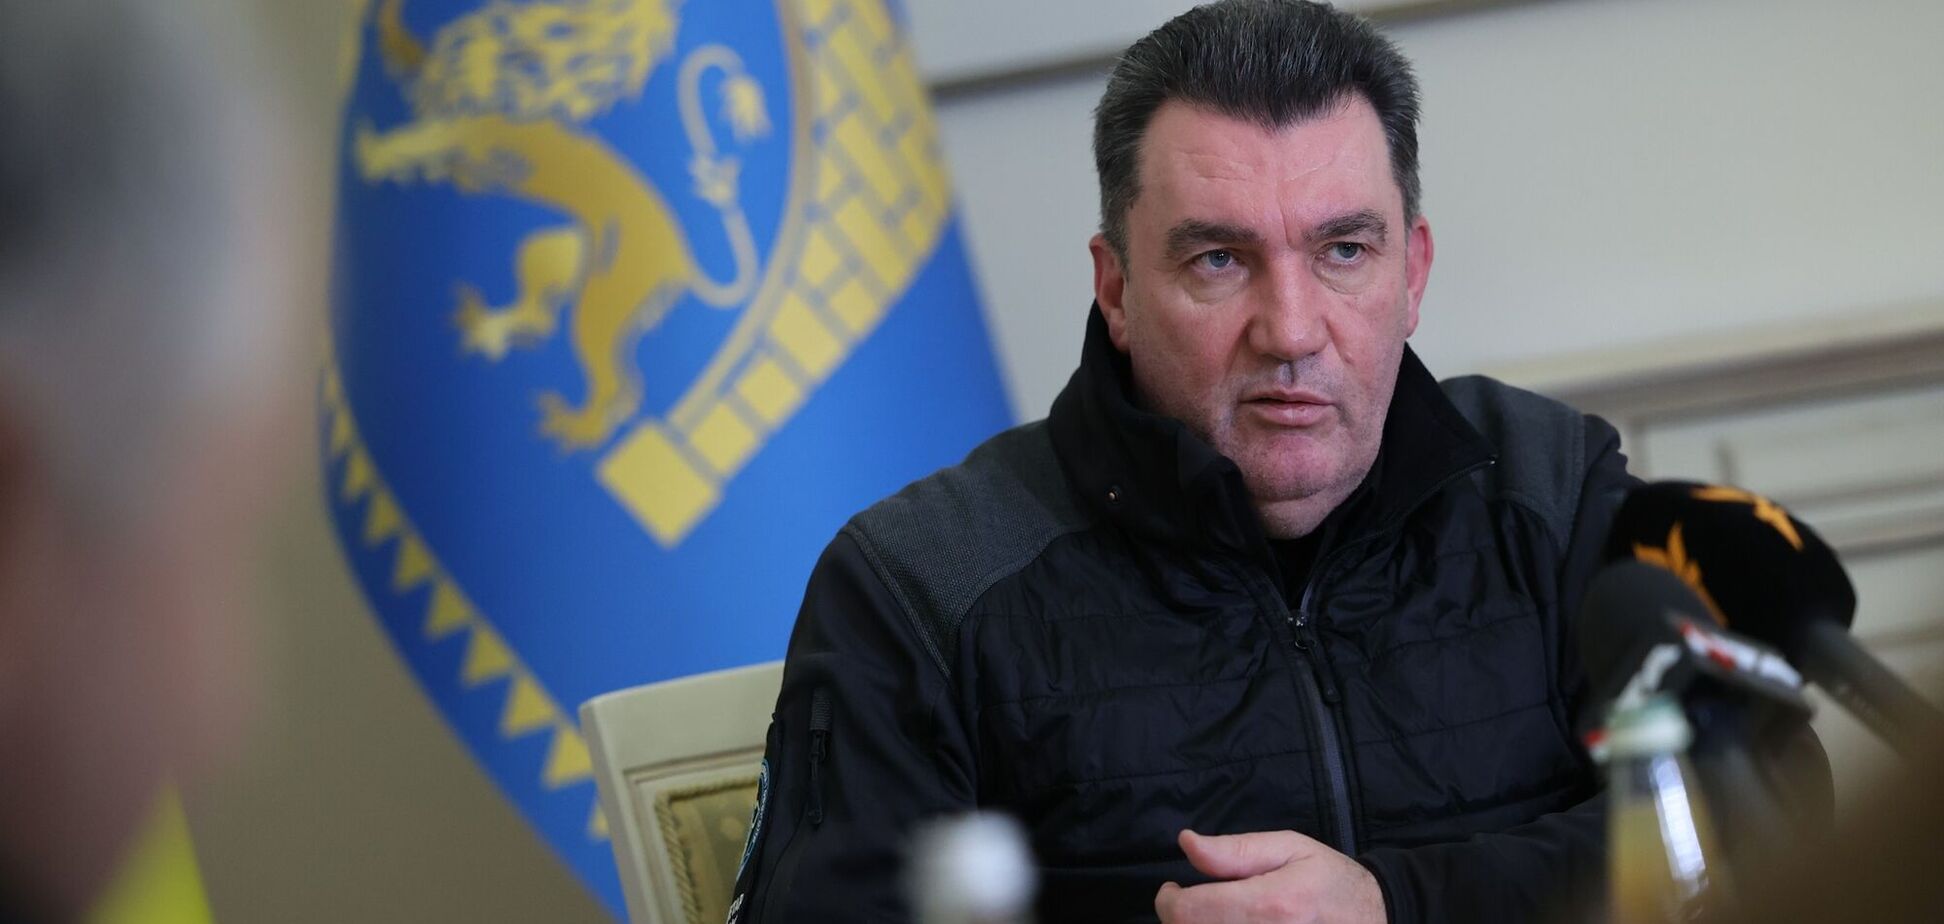 Данілов стане послом України в Молдові: Зеленський озвучив подробиці